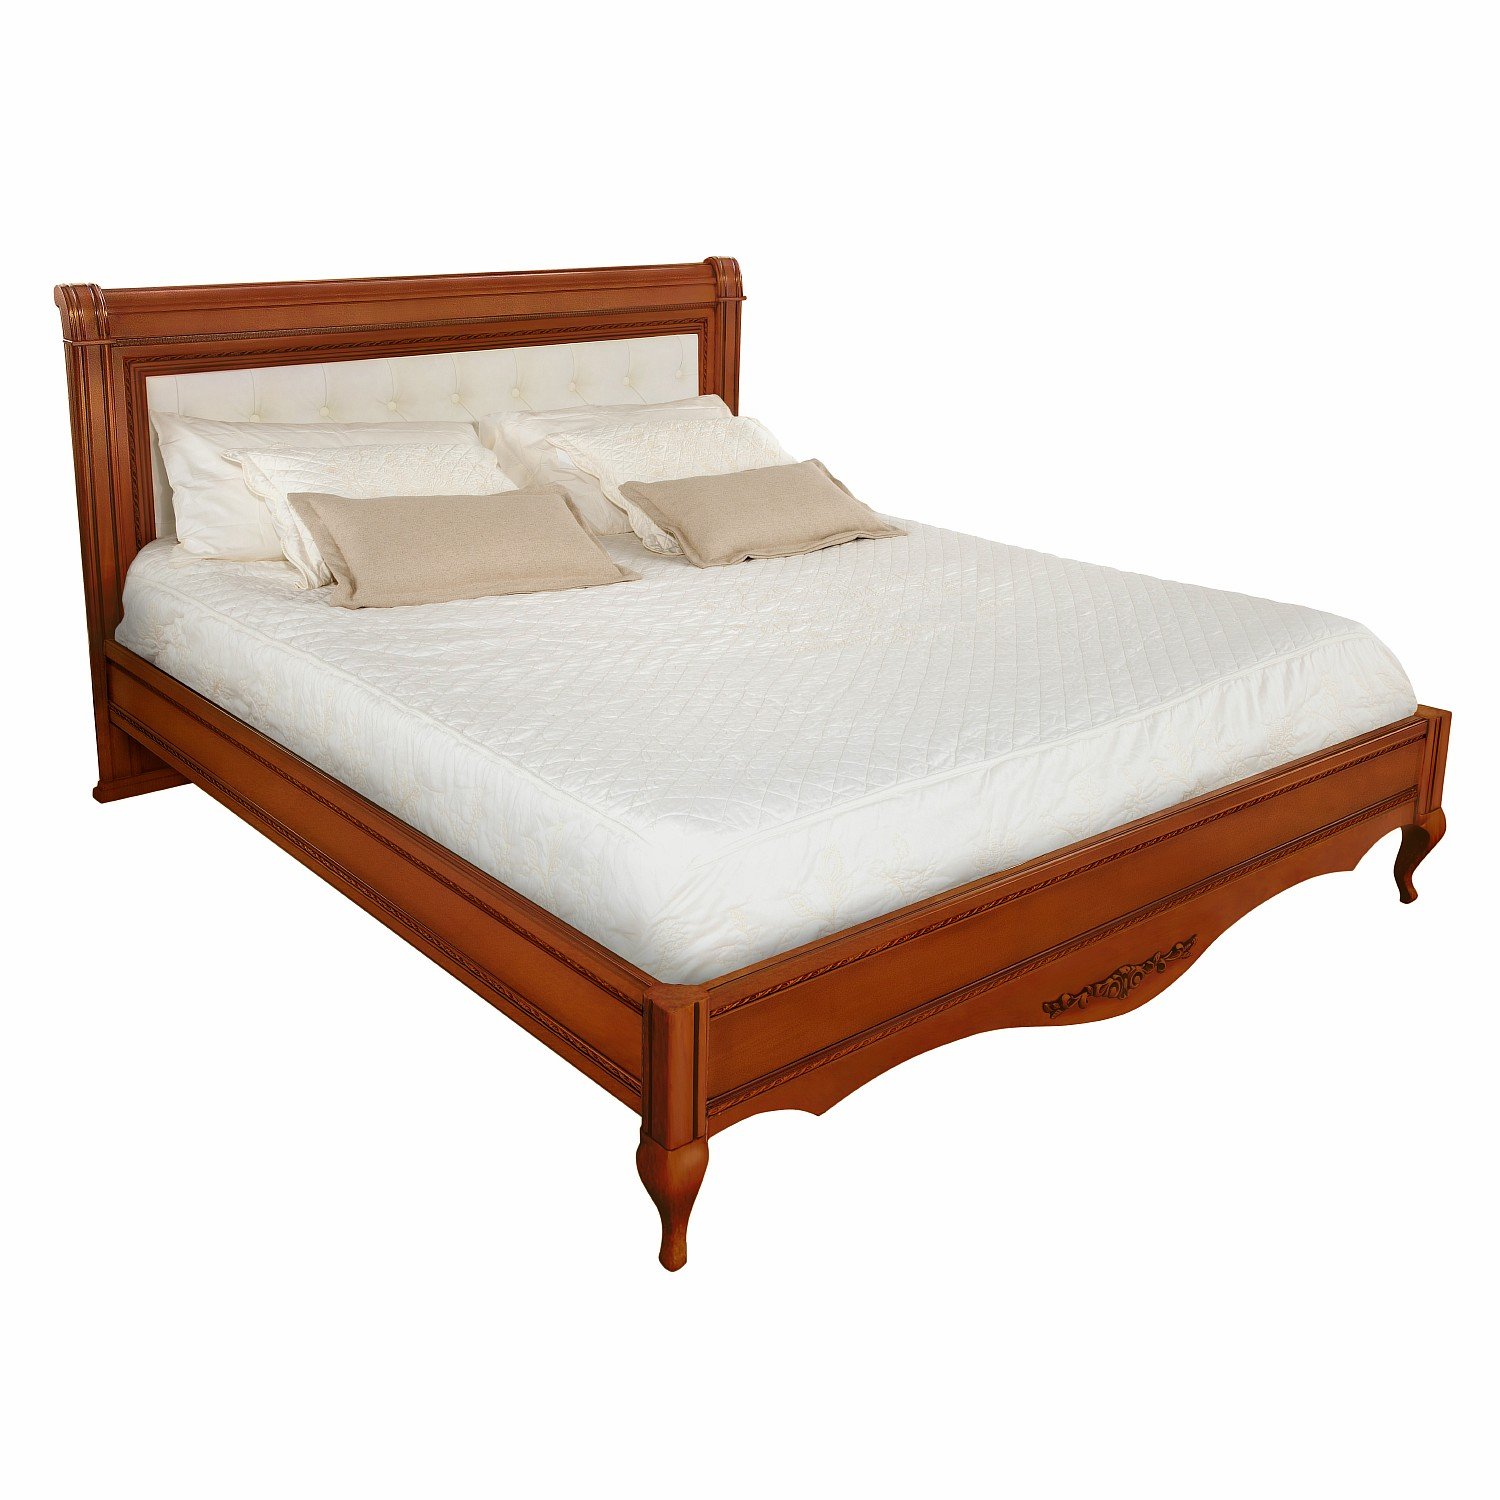 Кровать Timber Неаполь, двуспальная с мягким изголовьем 180x200 см, цвет: янтарь (Т-528/Y)Т-528